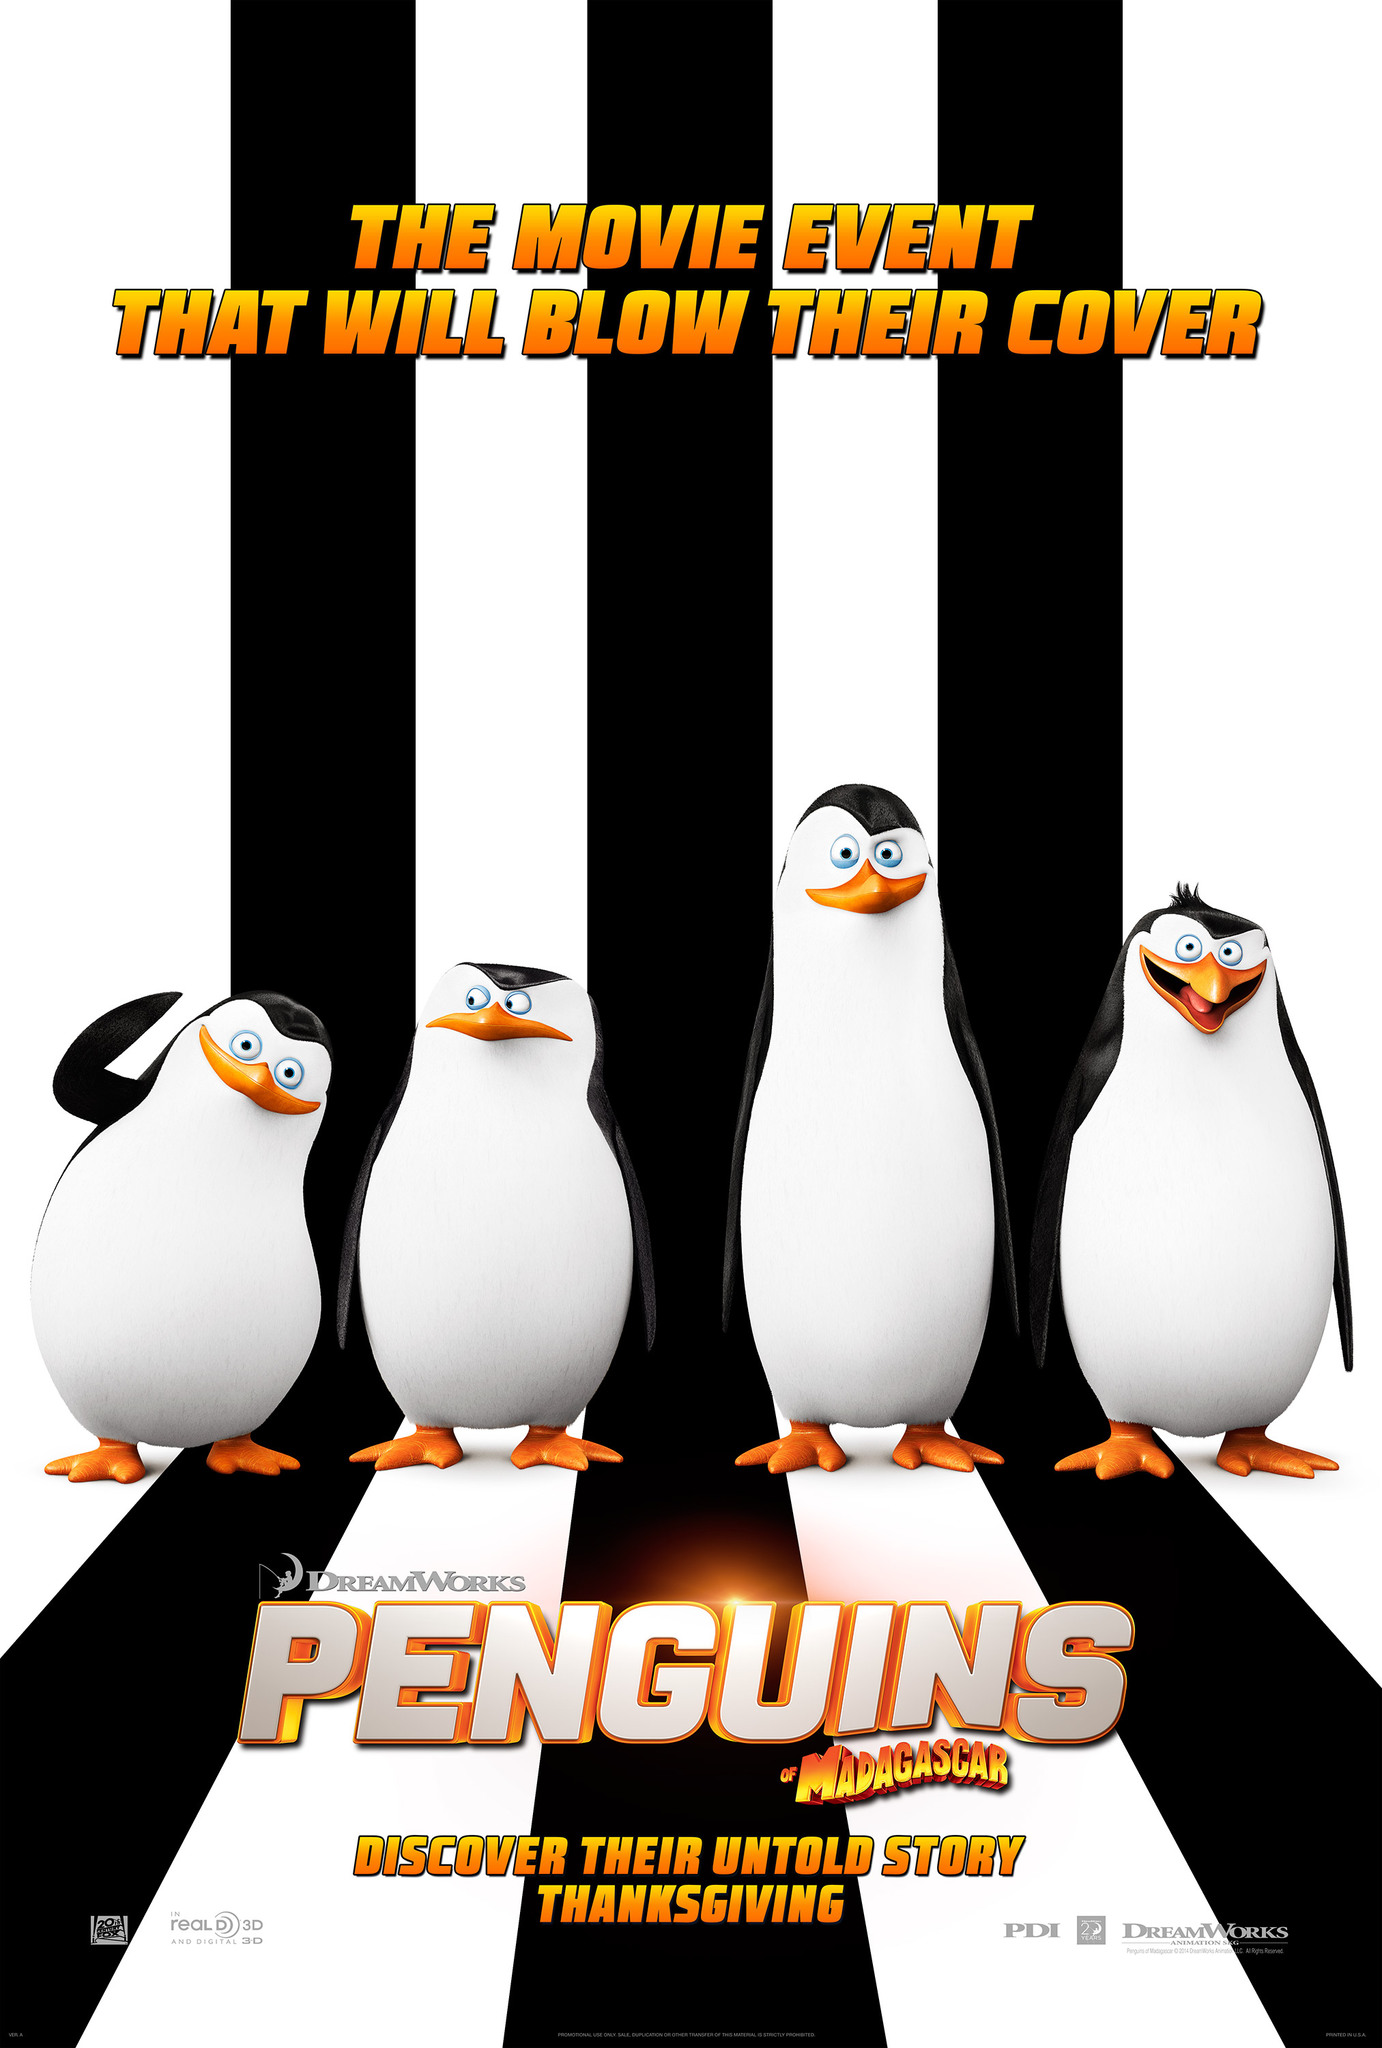 ดูหนังออนไลน์ Penguins of Madagascar (2014) เพนกวินจอมป่วน ก๊วนมาดากัสการ์